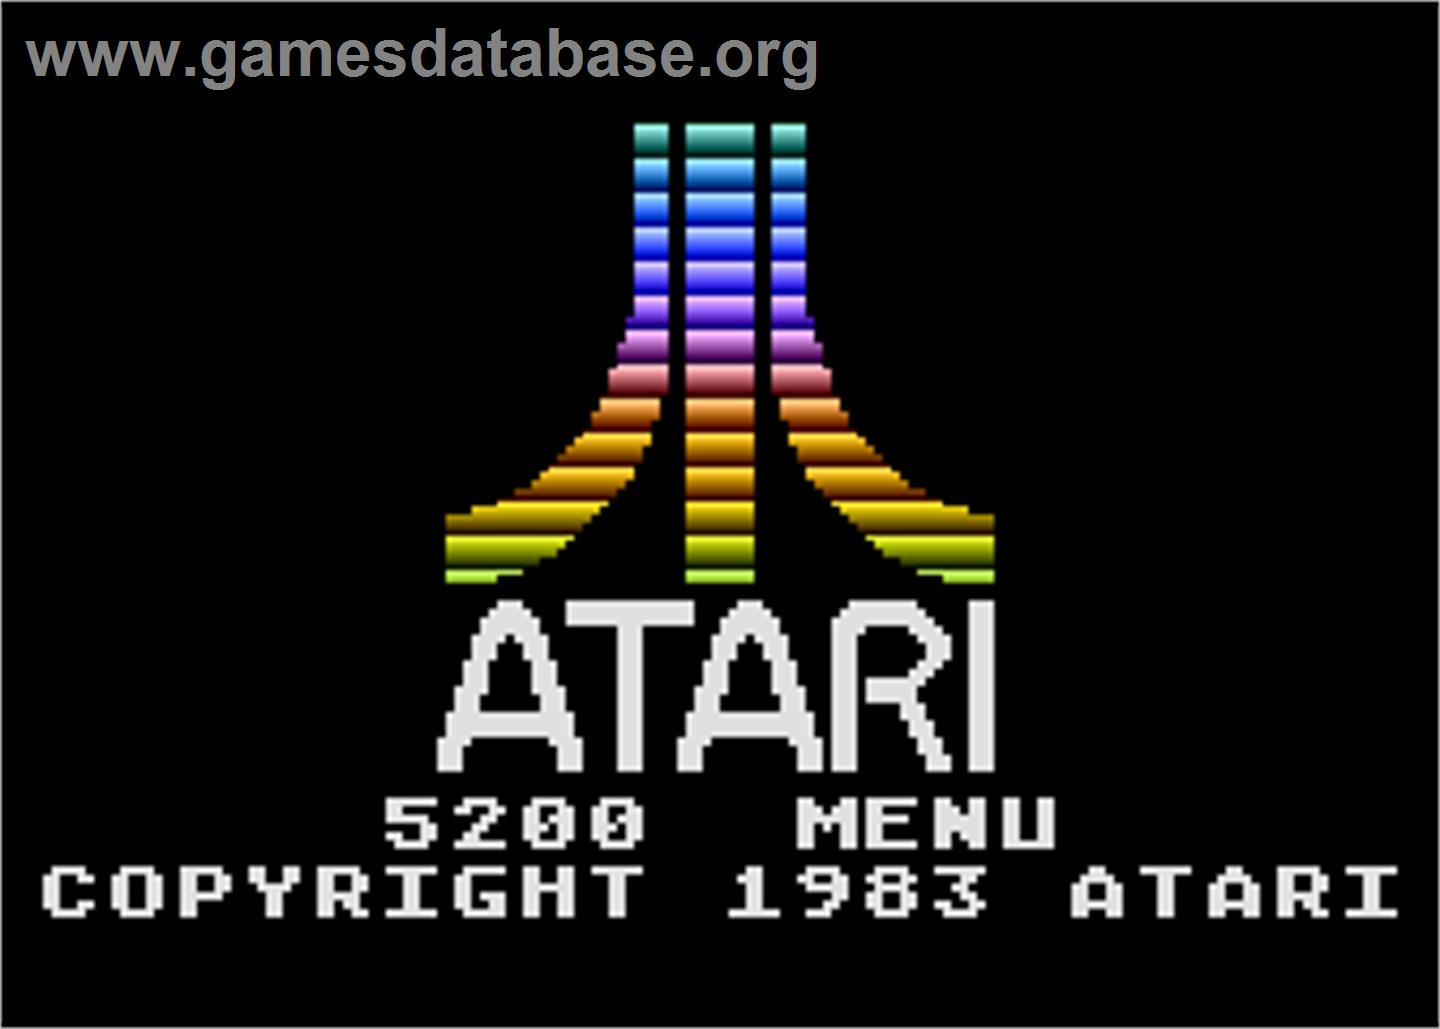 5200 Menu Program - Atari 5200 - Artwork - Title Screen